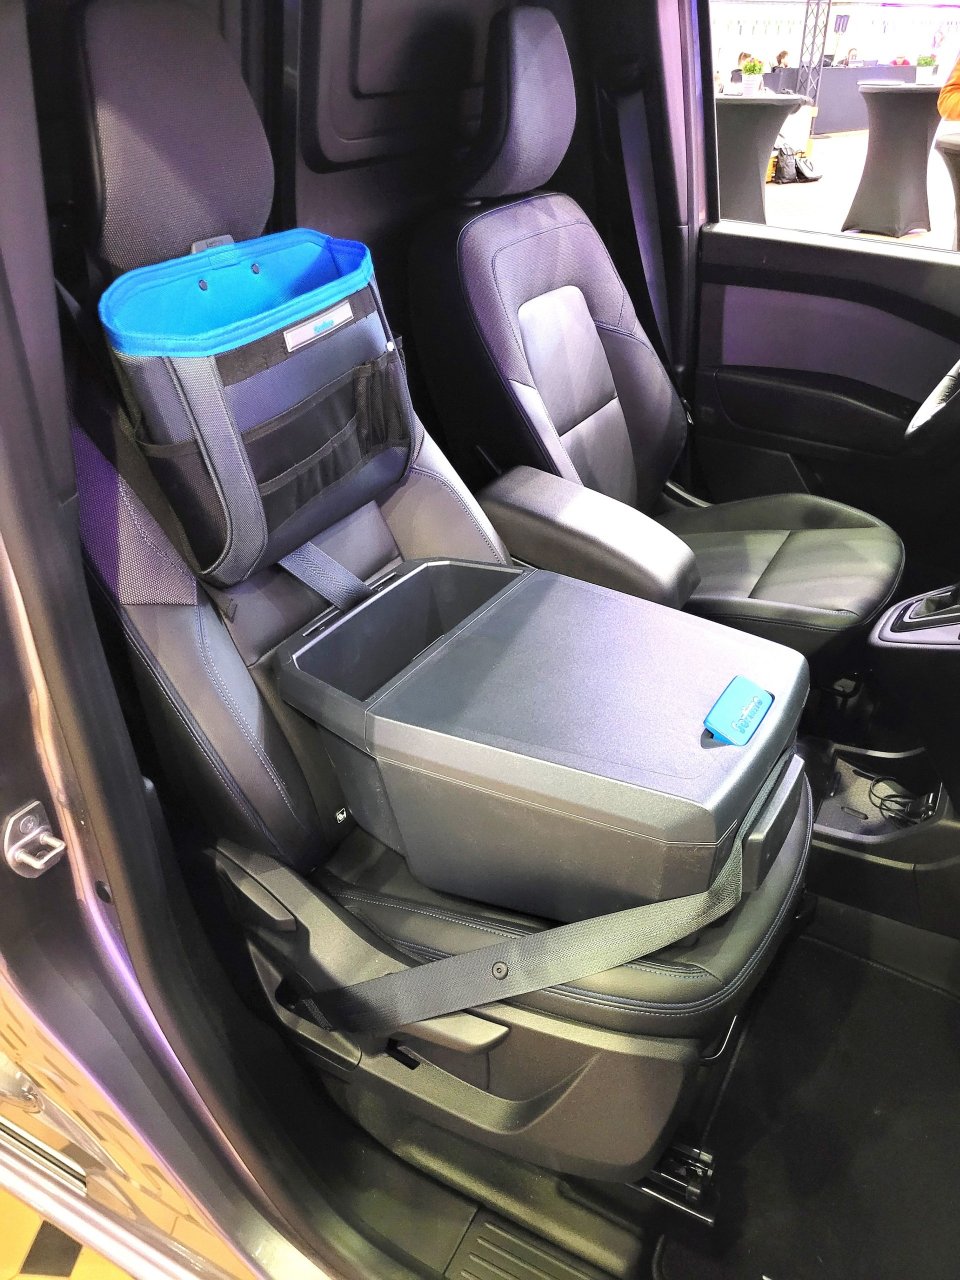 Aranżacja kabiny Towstara to obecnie jeden z najlepszych projektów w segmencie lekkich aut dostawczych. Cieszy jakość wykonania oraz ergonomia. Smucą – grube słupki A ograniczające widoczność po skosach.